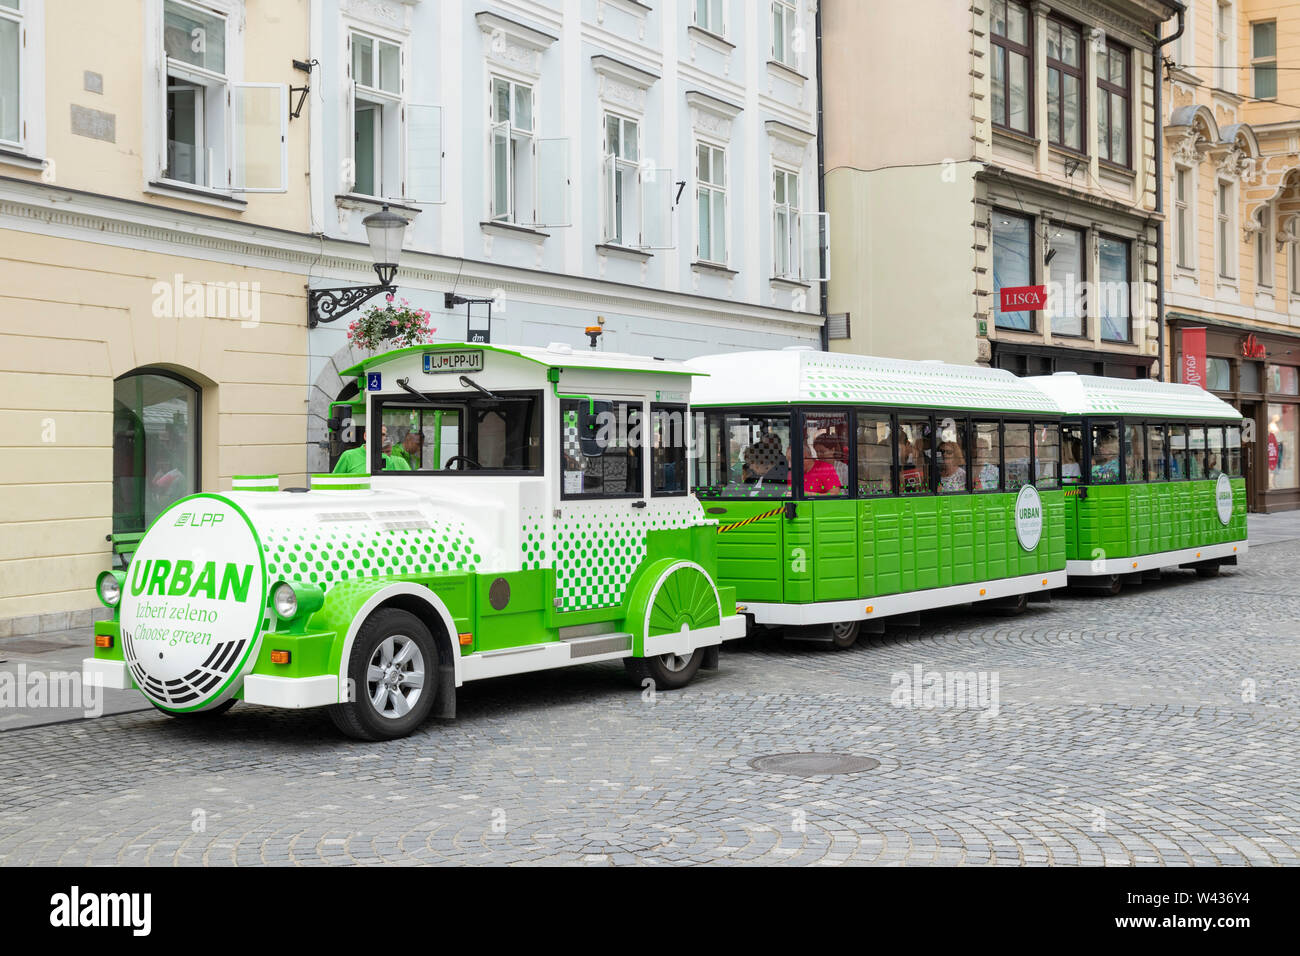 Circulaire respectueuse de l'train avec le train électrique urbain dans le centre de Ljubljana Slovénie eu Europe Banque D'Images